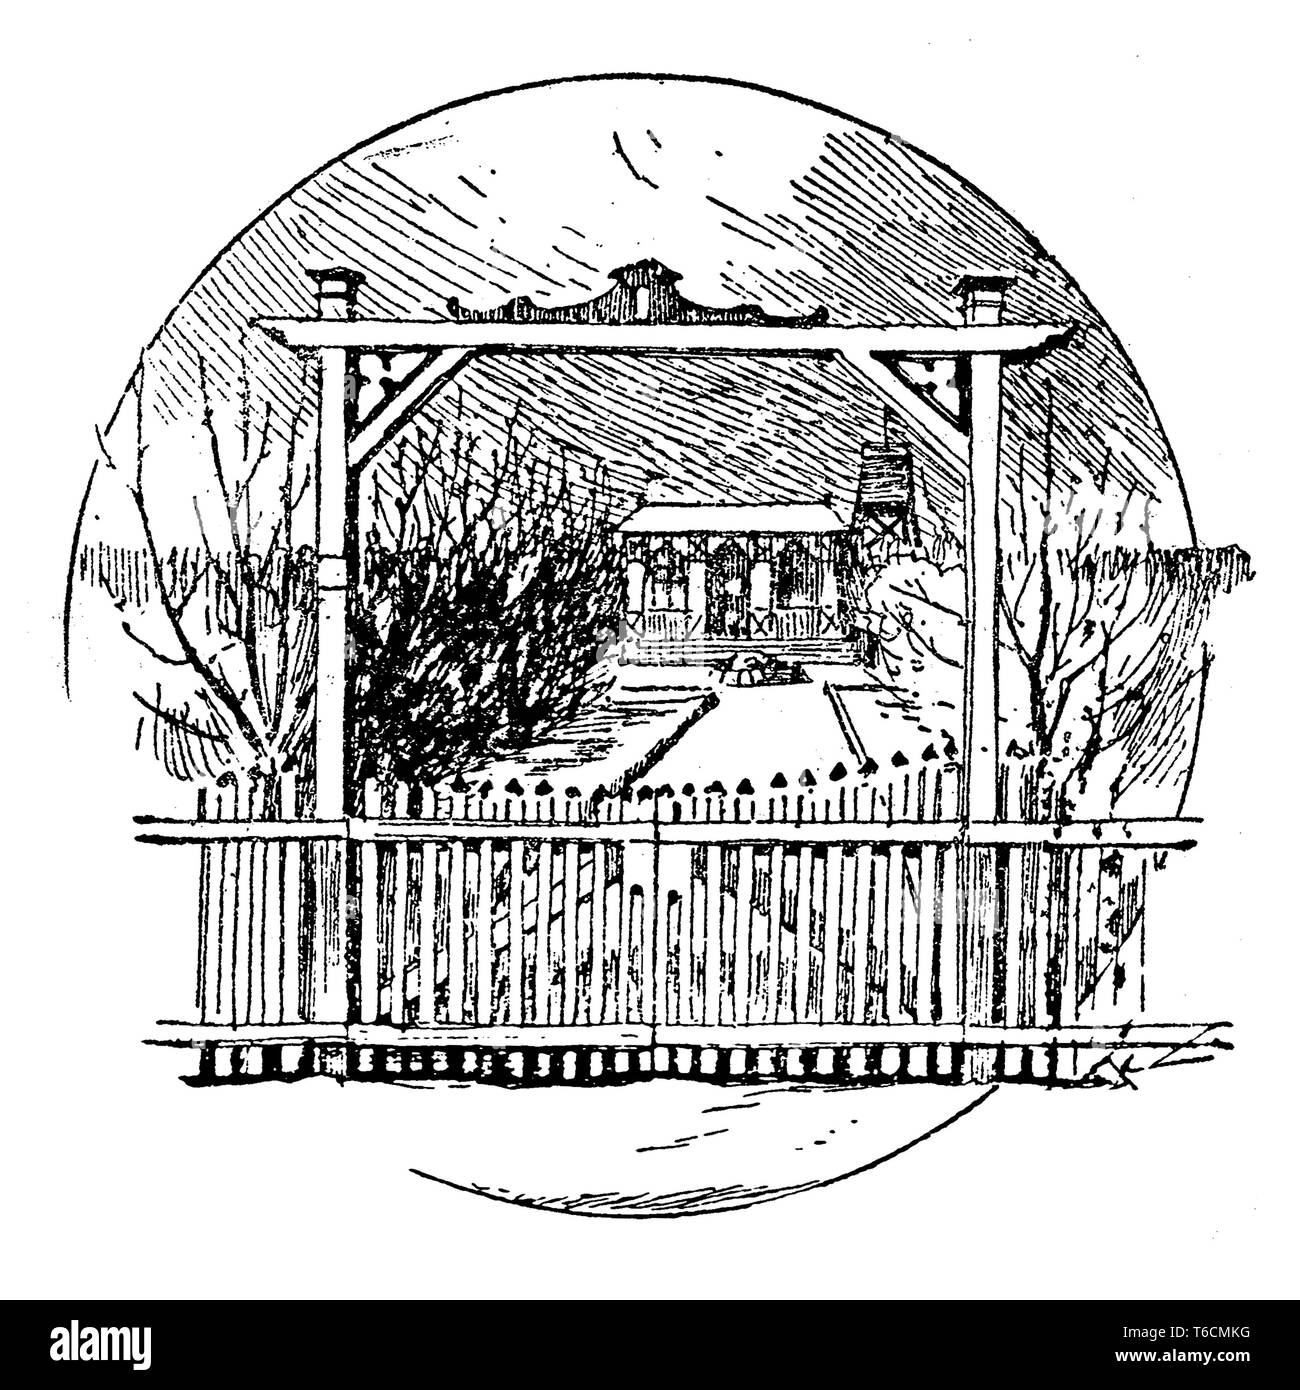 E GIARDINAGGIO: immagine tipografici di una casa con giardino come capitolo o decorazione di pagina Foto Stock